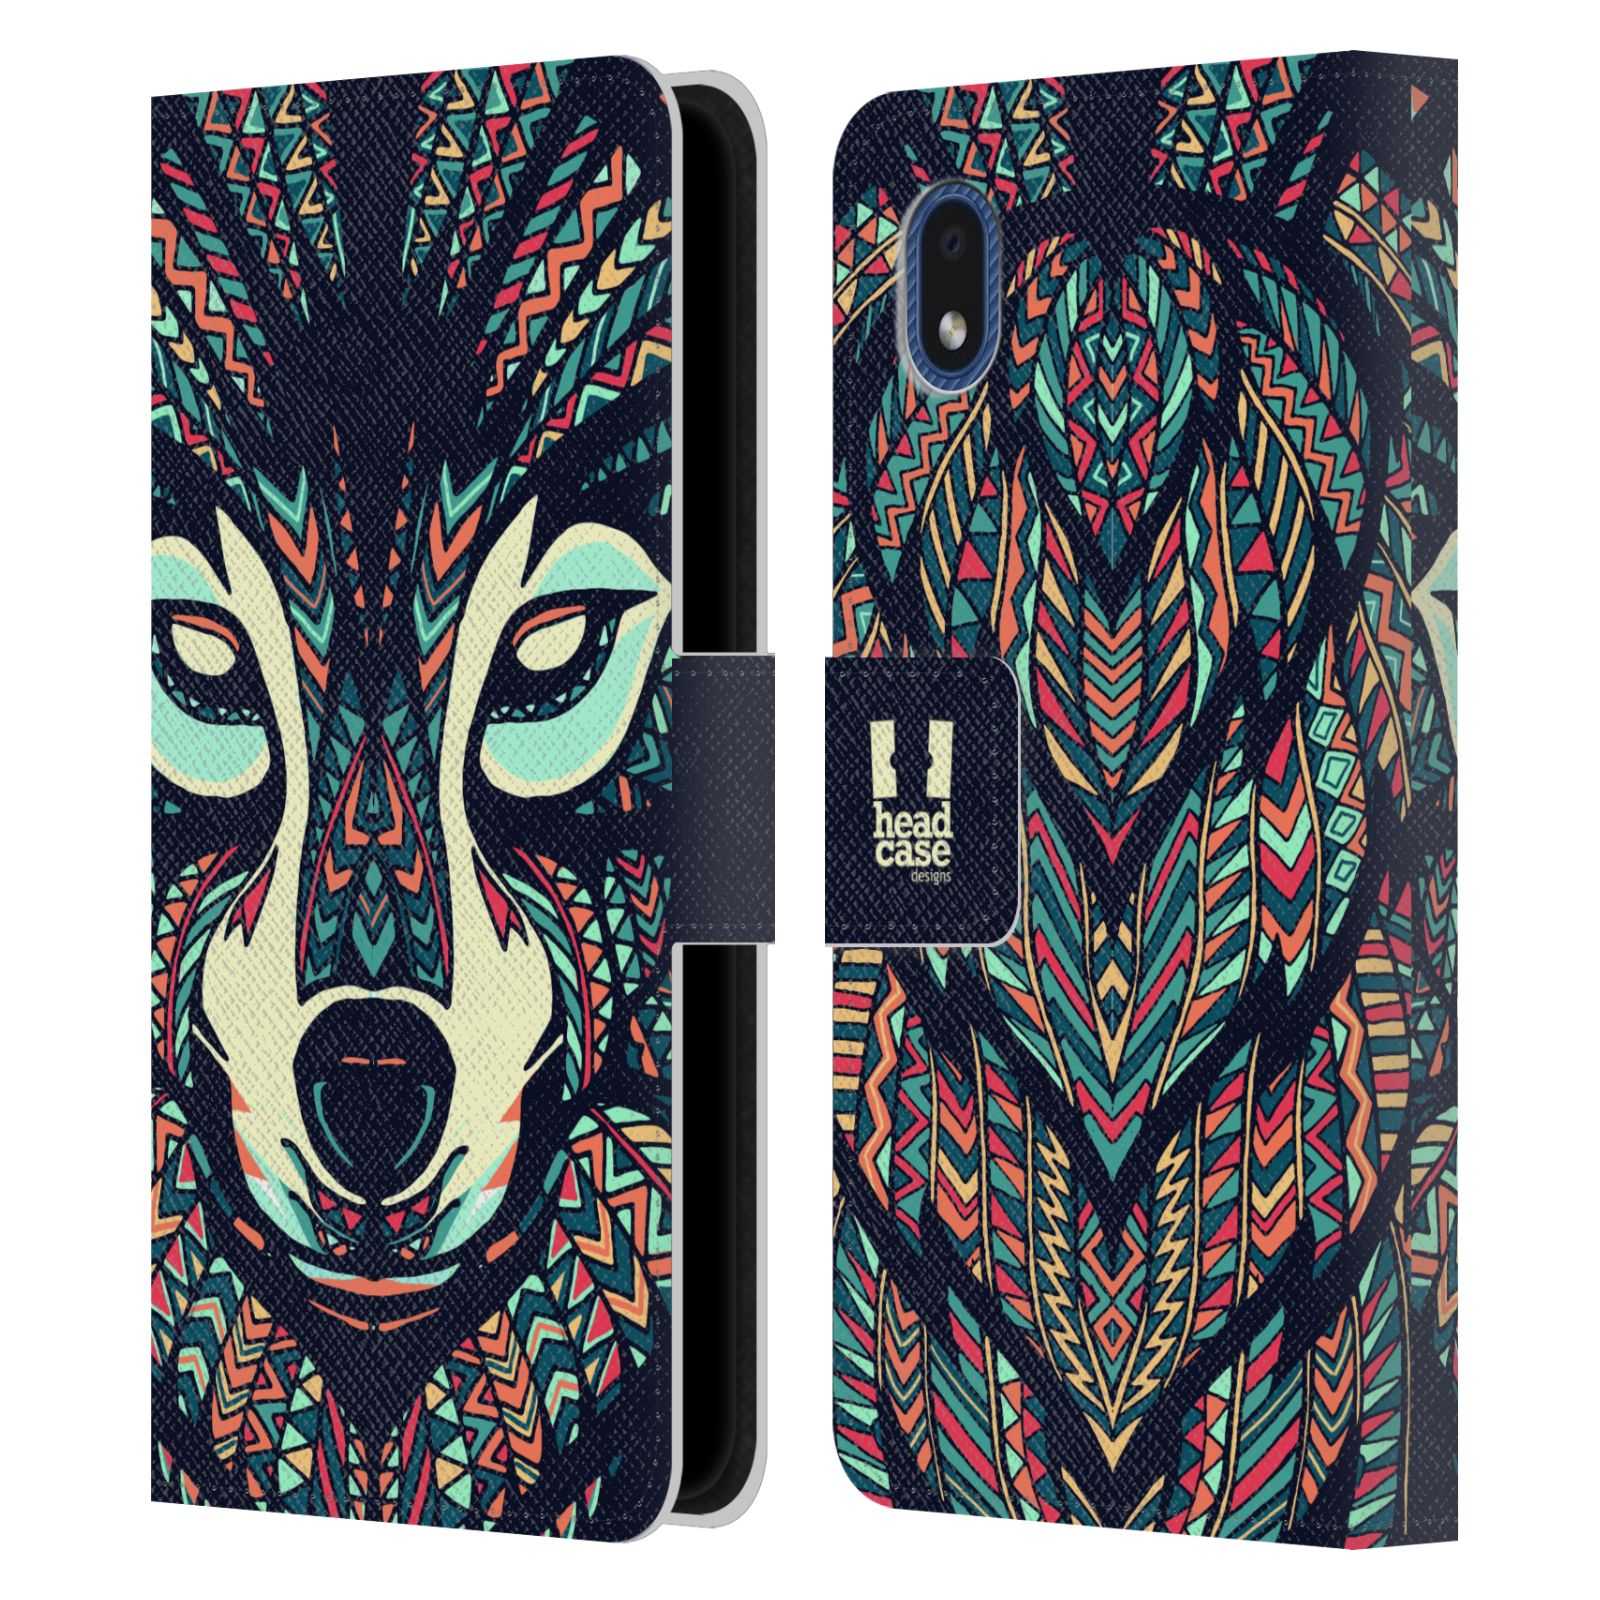 Pouzdro pro mobil Samsung Galaxy A01 CORE - HEAD CASE - Aztécký motiv vlk